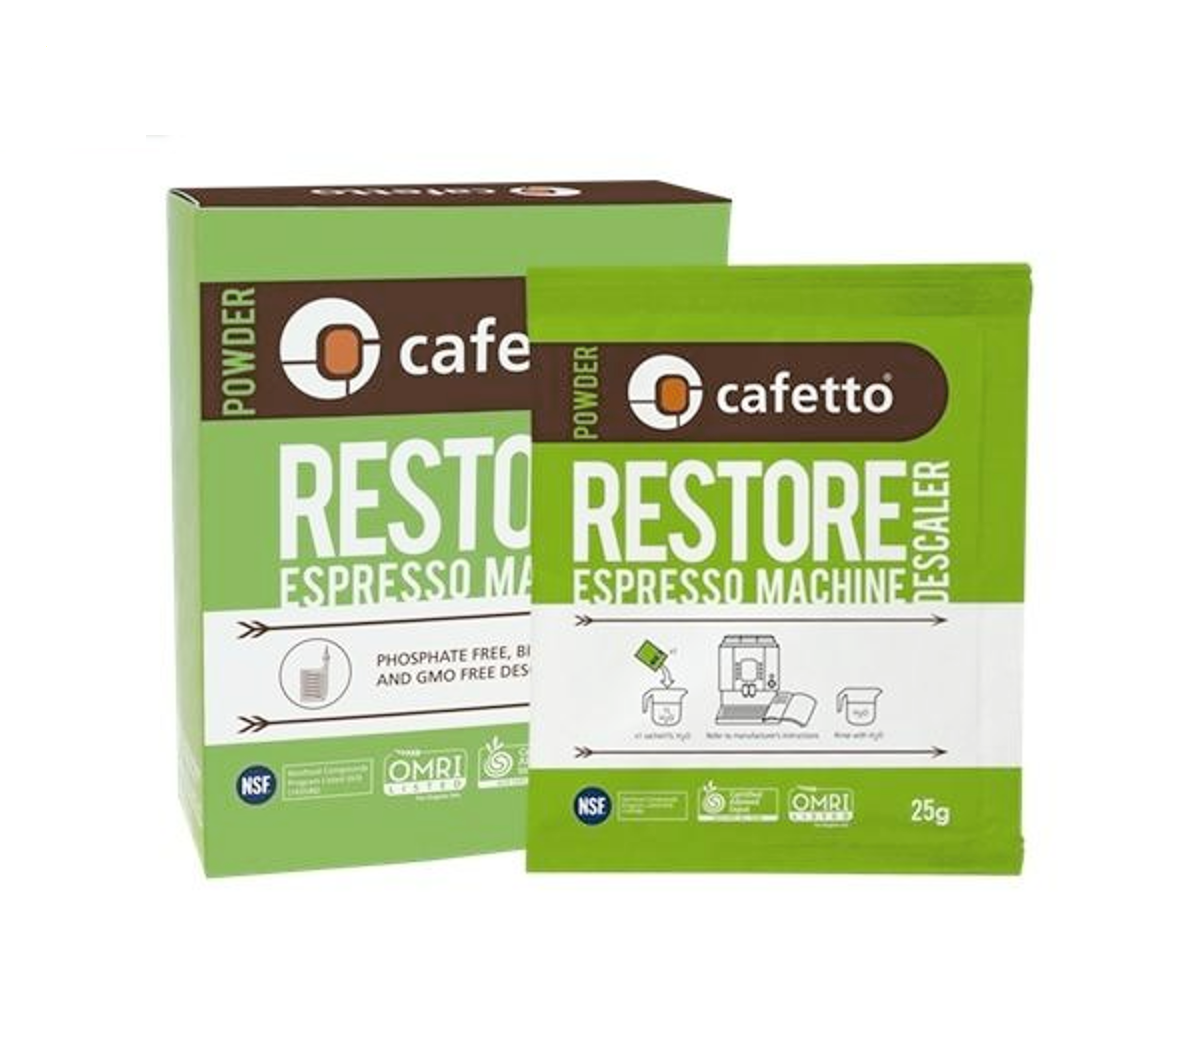 Cafetto "RESTORE" Espresso Machine Descaler